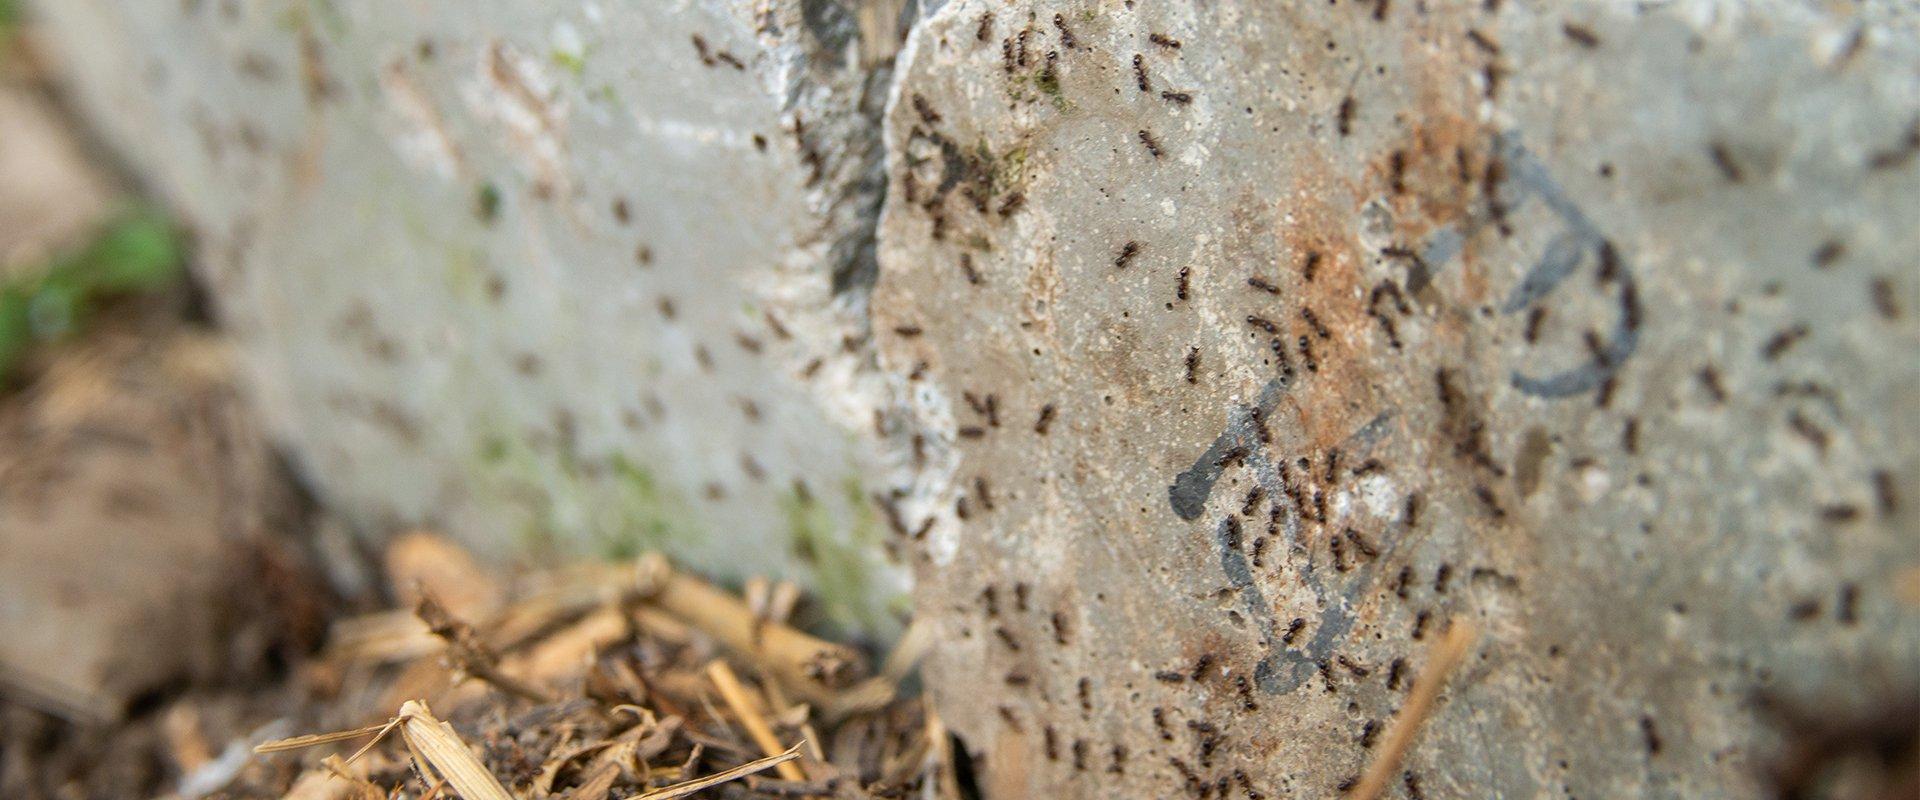 ants on a rock